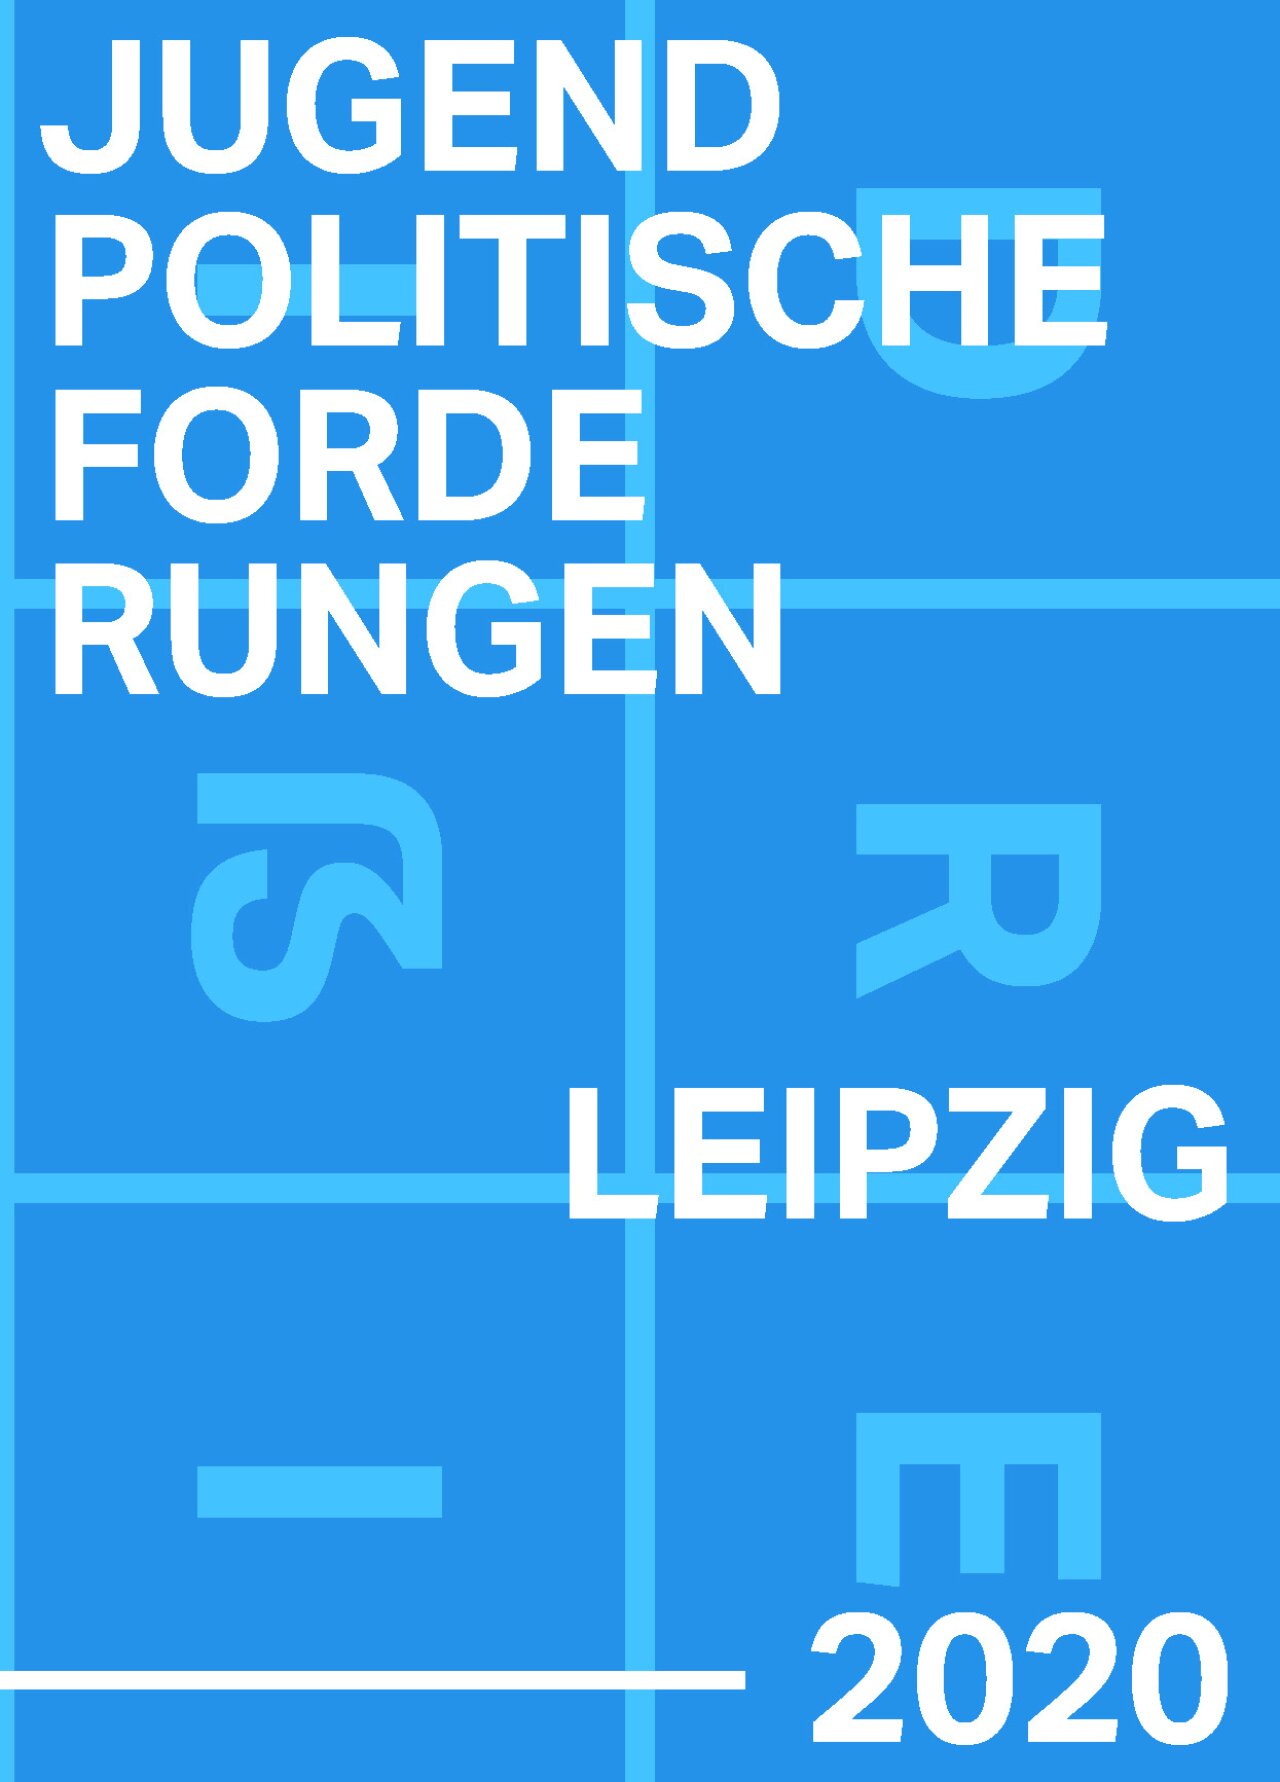 Titel Jugendpolitische Forderungen Leipzig 2020.